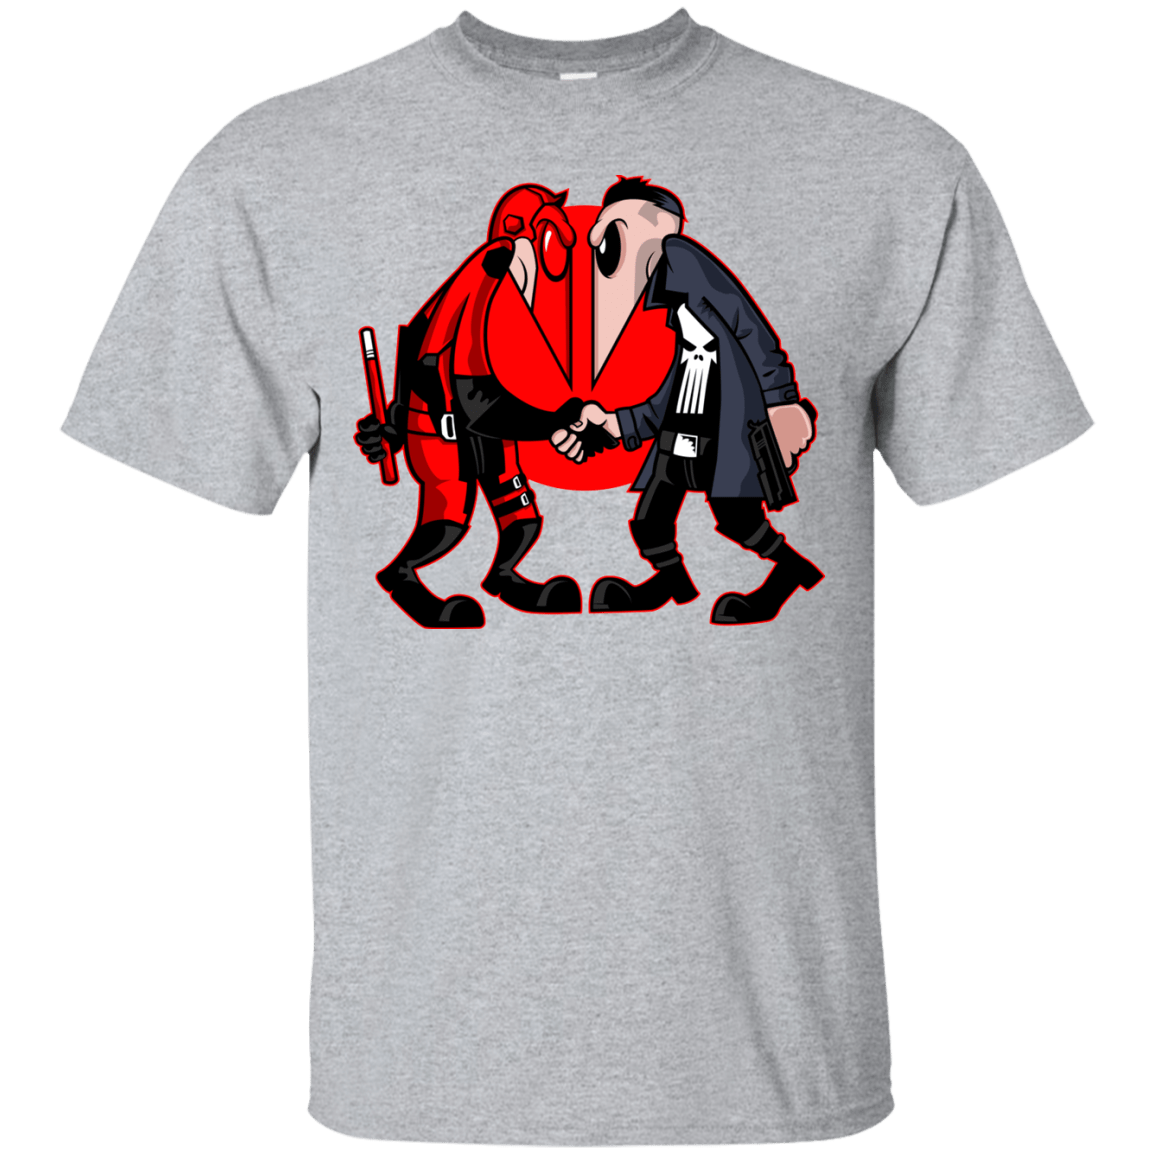 T-Shirts Sport Grey / S Hero vs Antihero T-Shirt